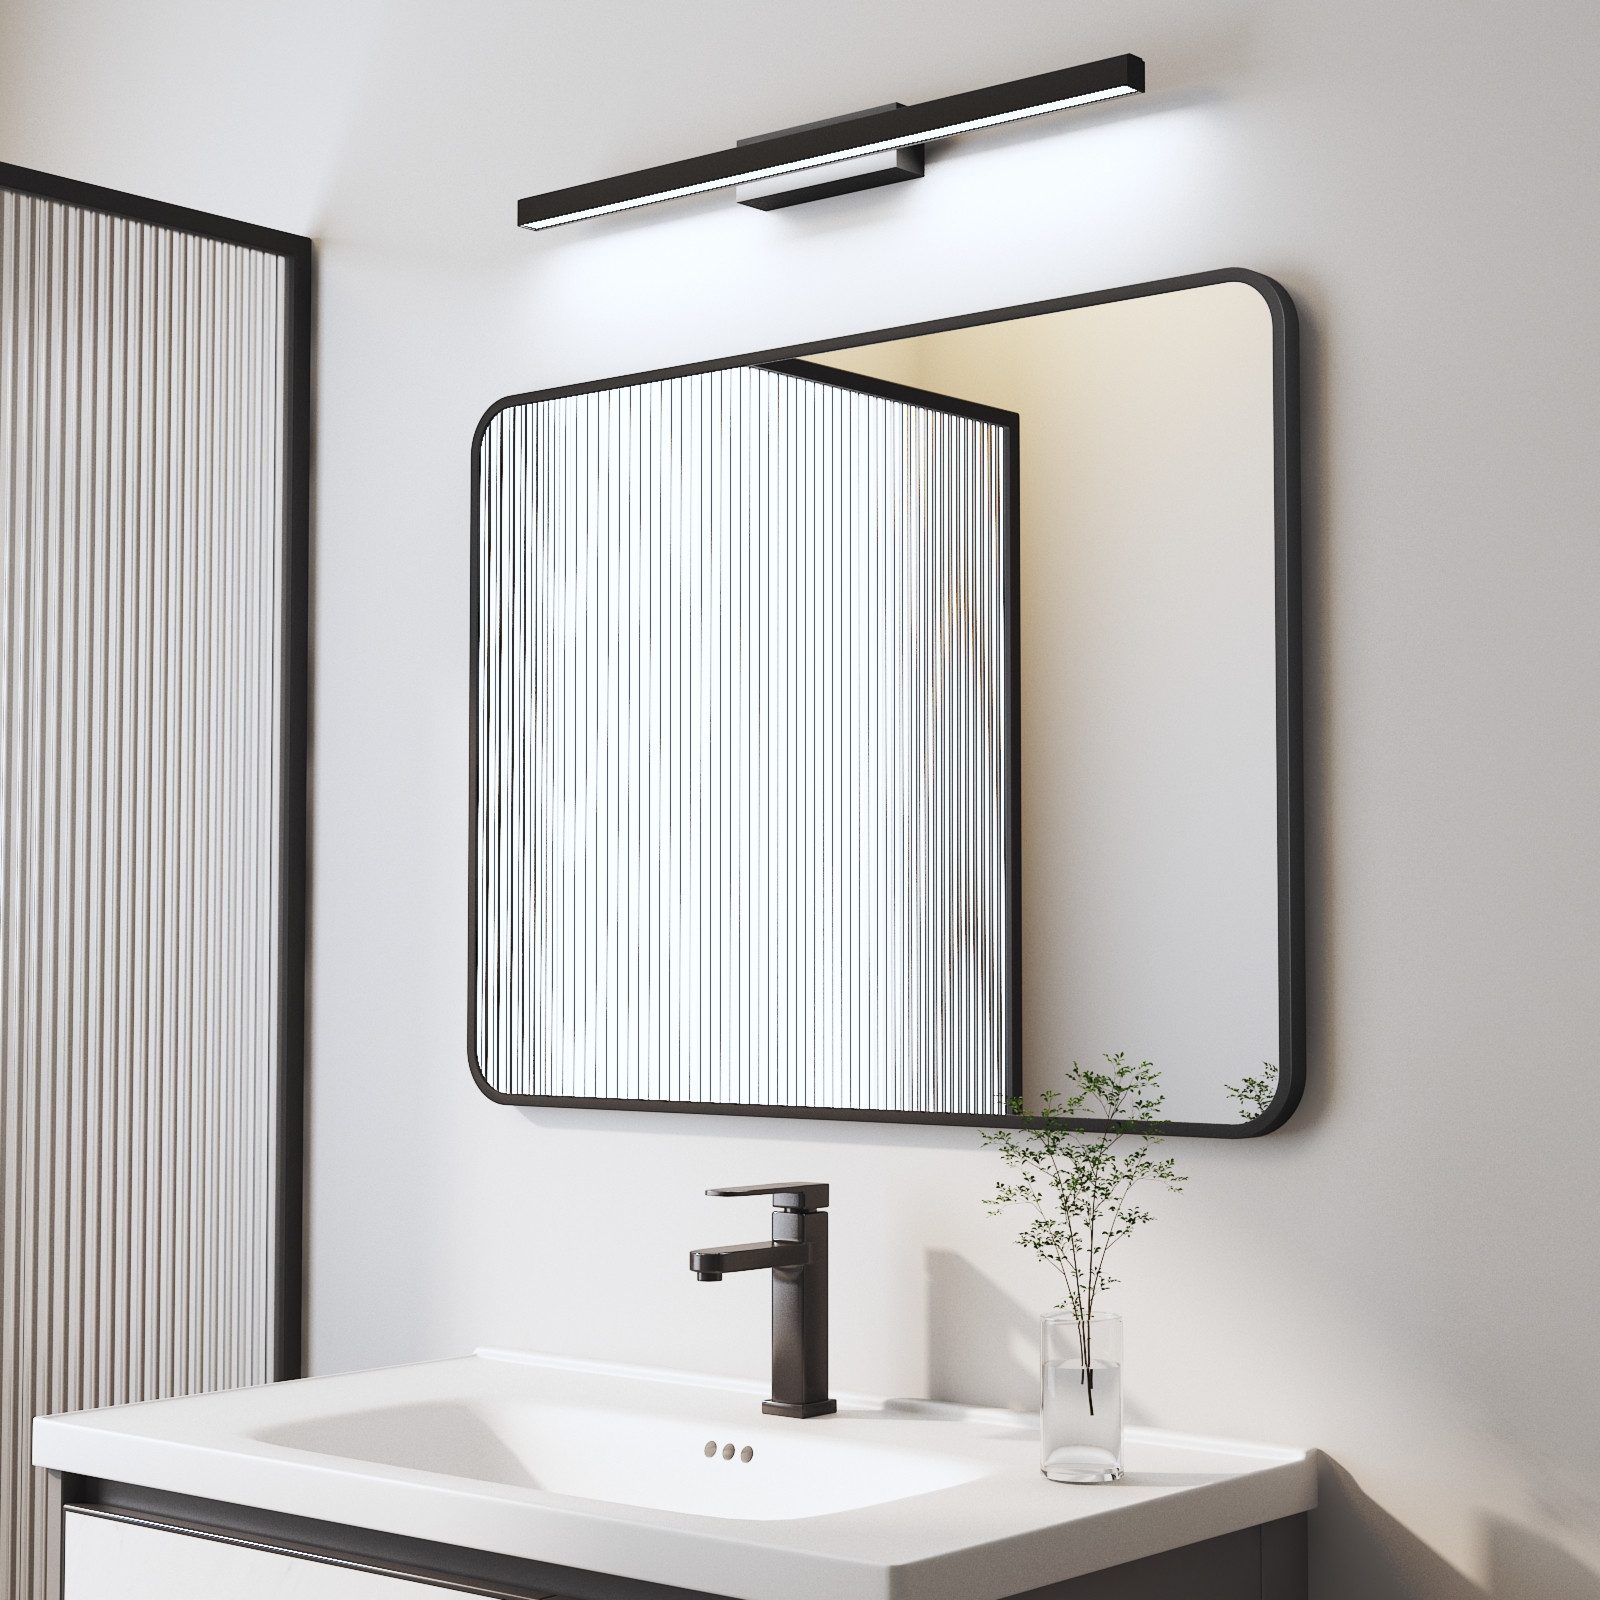 WDWRITTI Spiegel mit licht Badspiegel Wandspiegel mit 60cm LED Wandleuchte Kaltweiß (Rechteckig, 100x60, 80x60, 70x50, 60x40), HD Spiegel mit Metall Rahmen